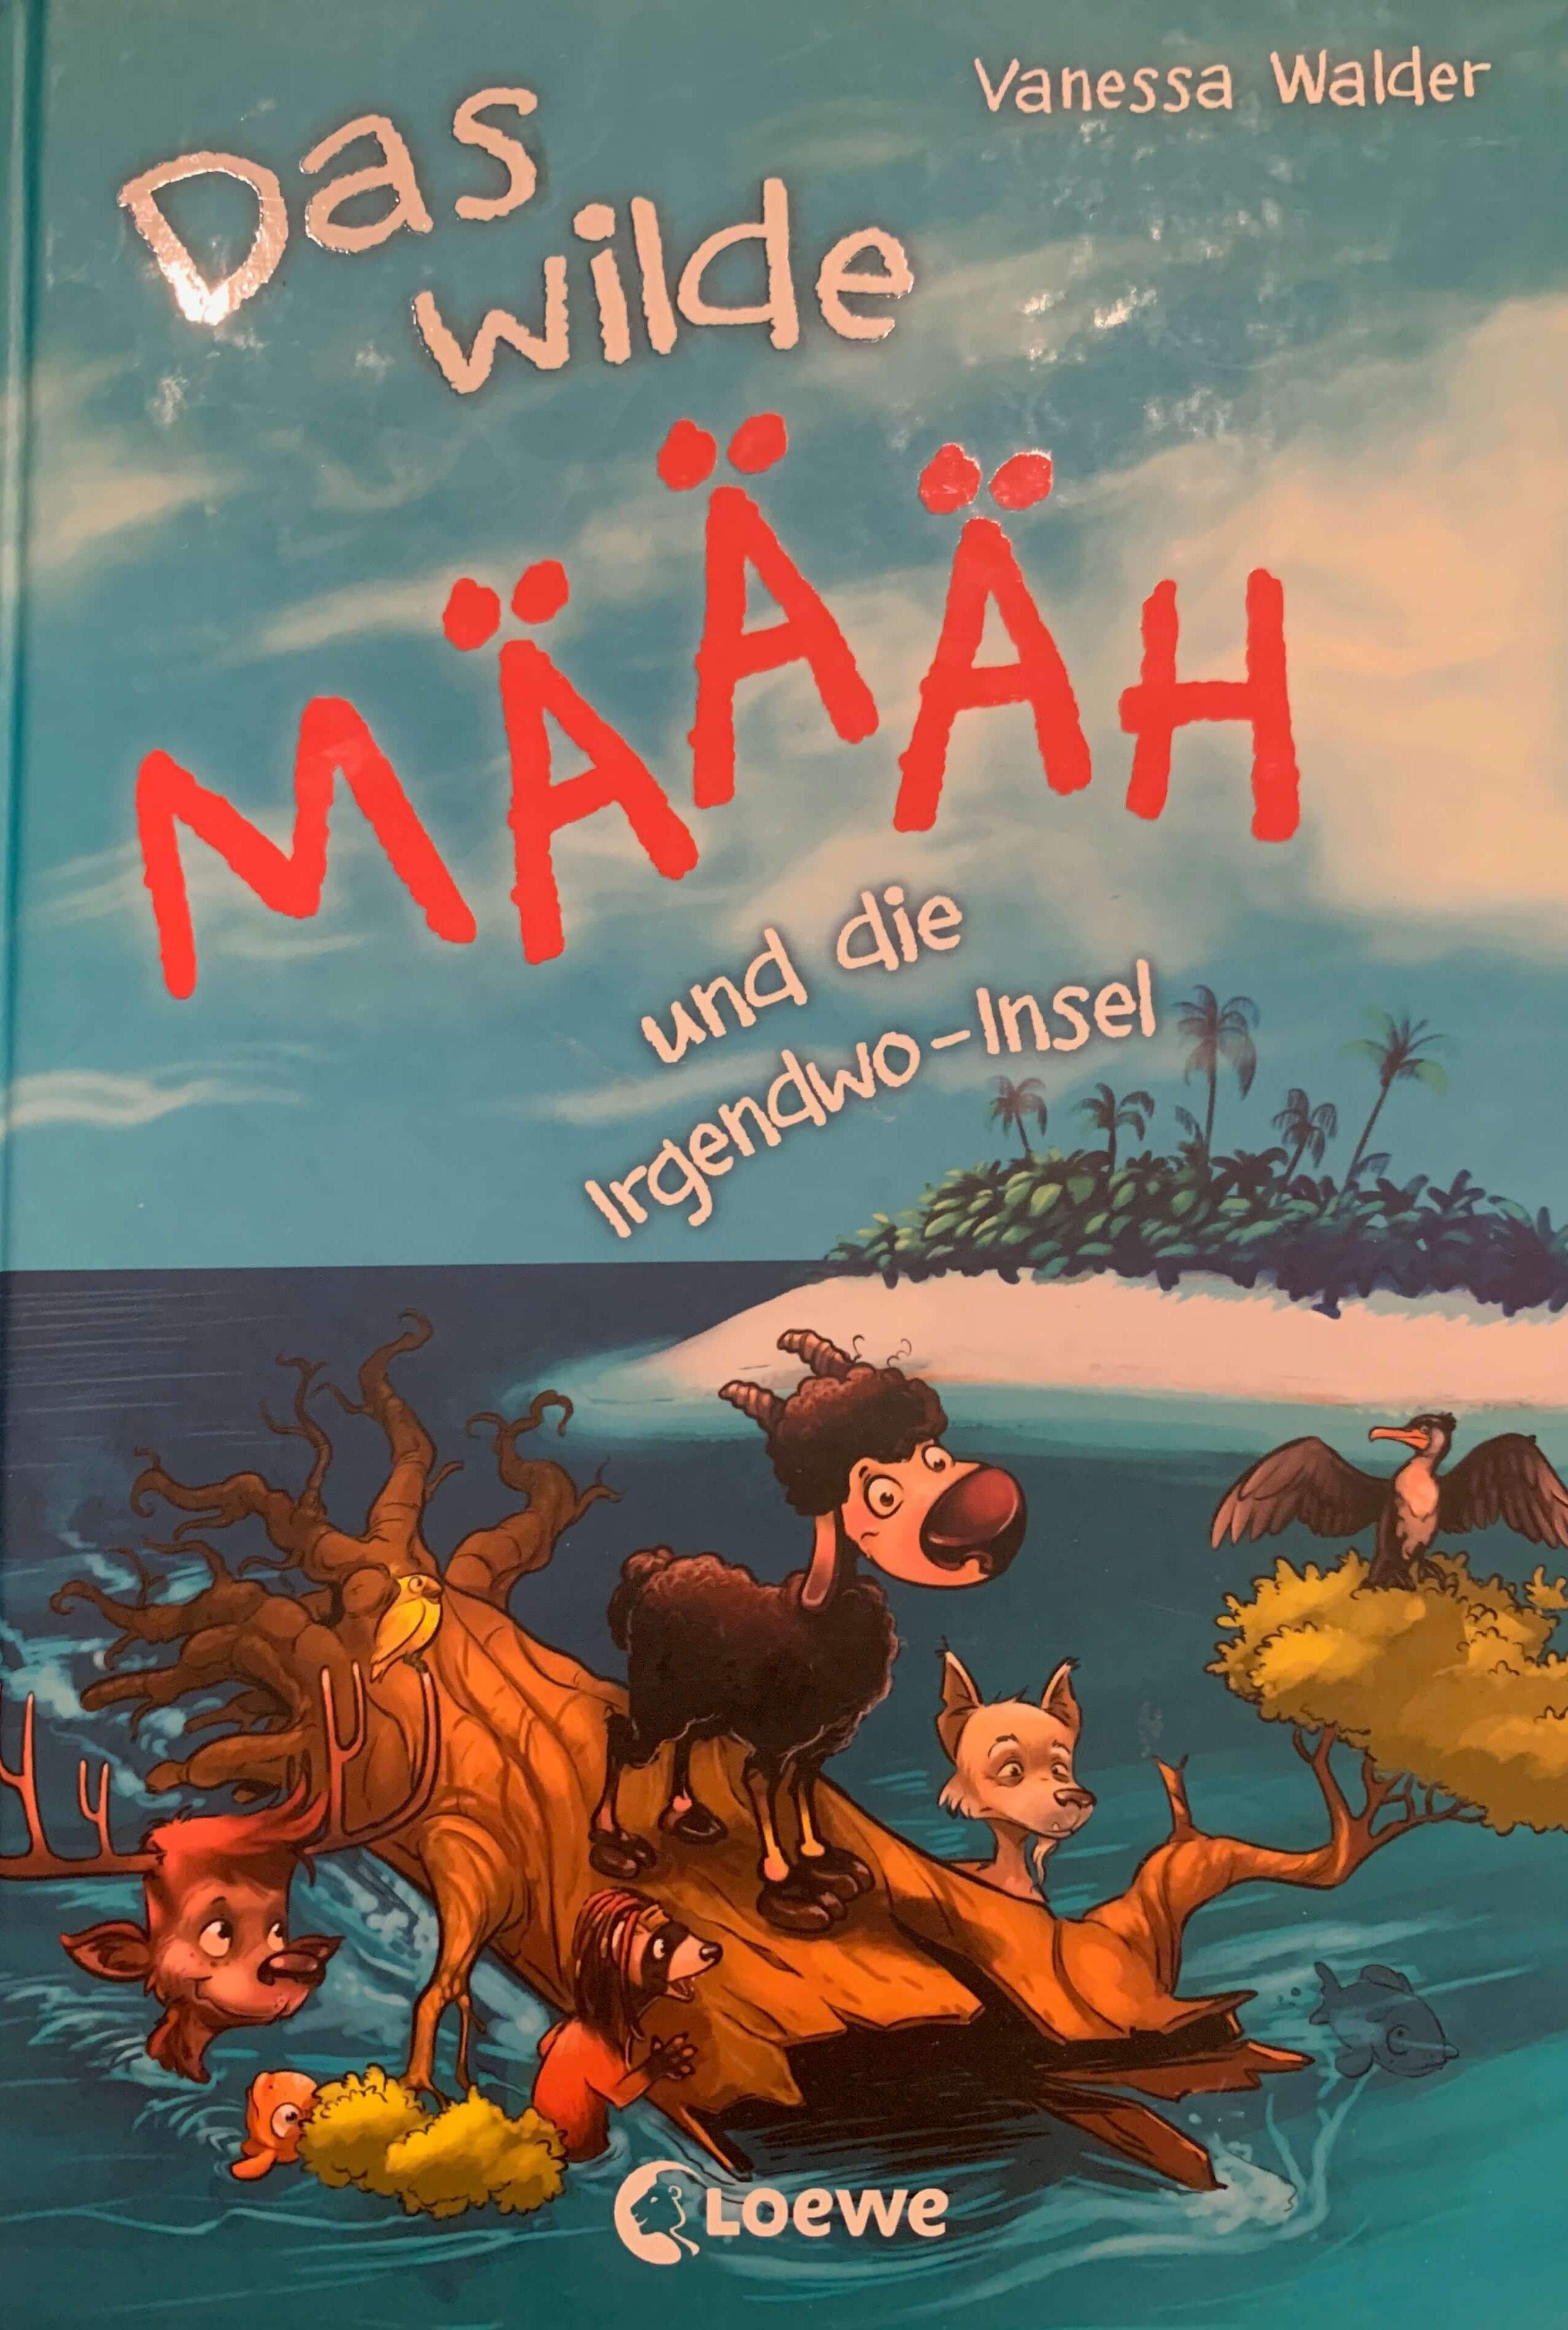 Das wilde Määäh und die Irgenwo-Insel (Bd 3)